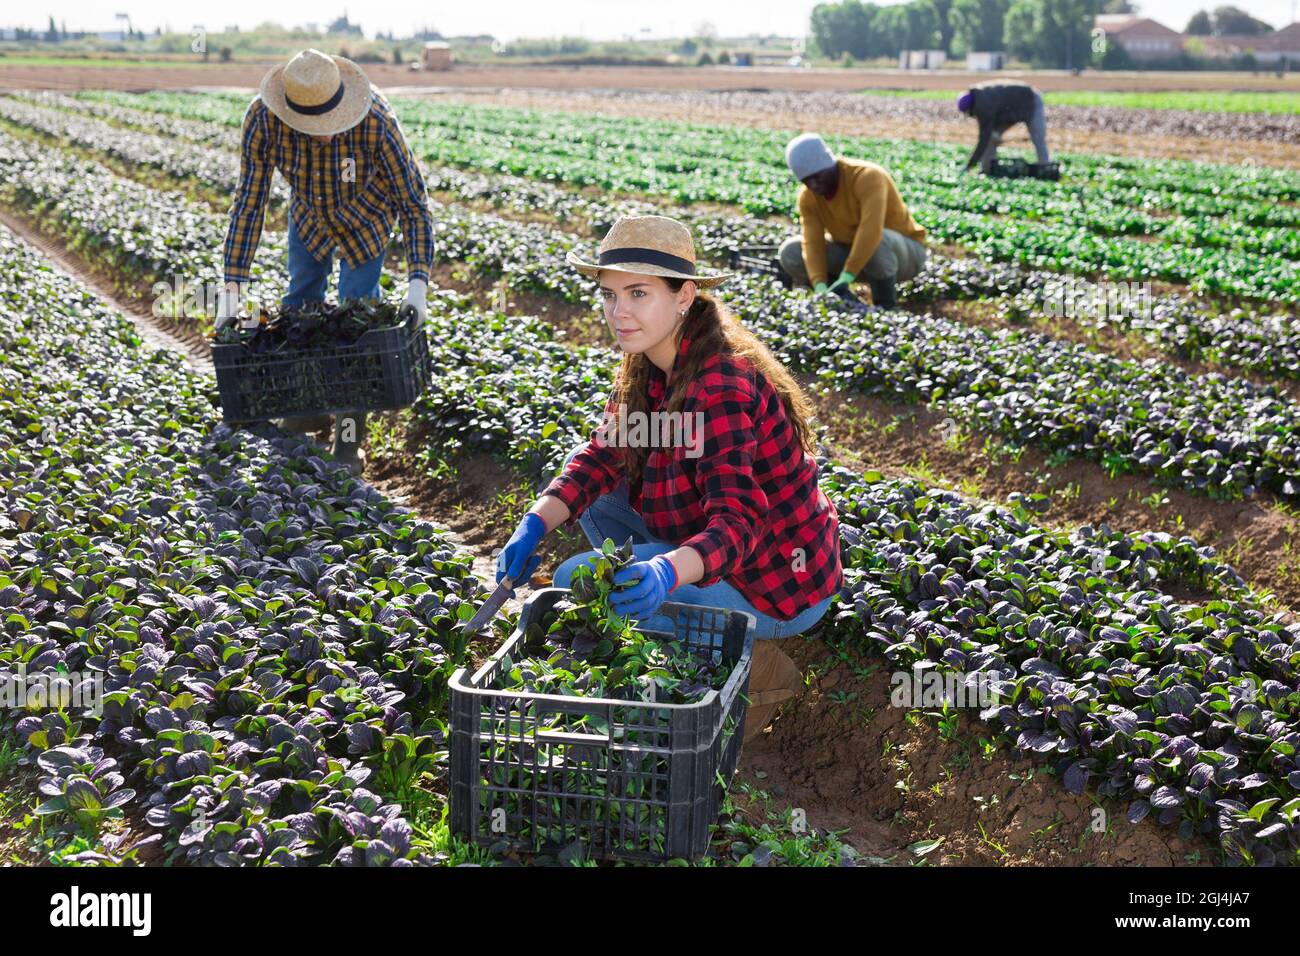 Grupo de trabajadores agrícolas recolectando la cosecha de canonigos rojos Foto de stock